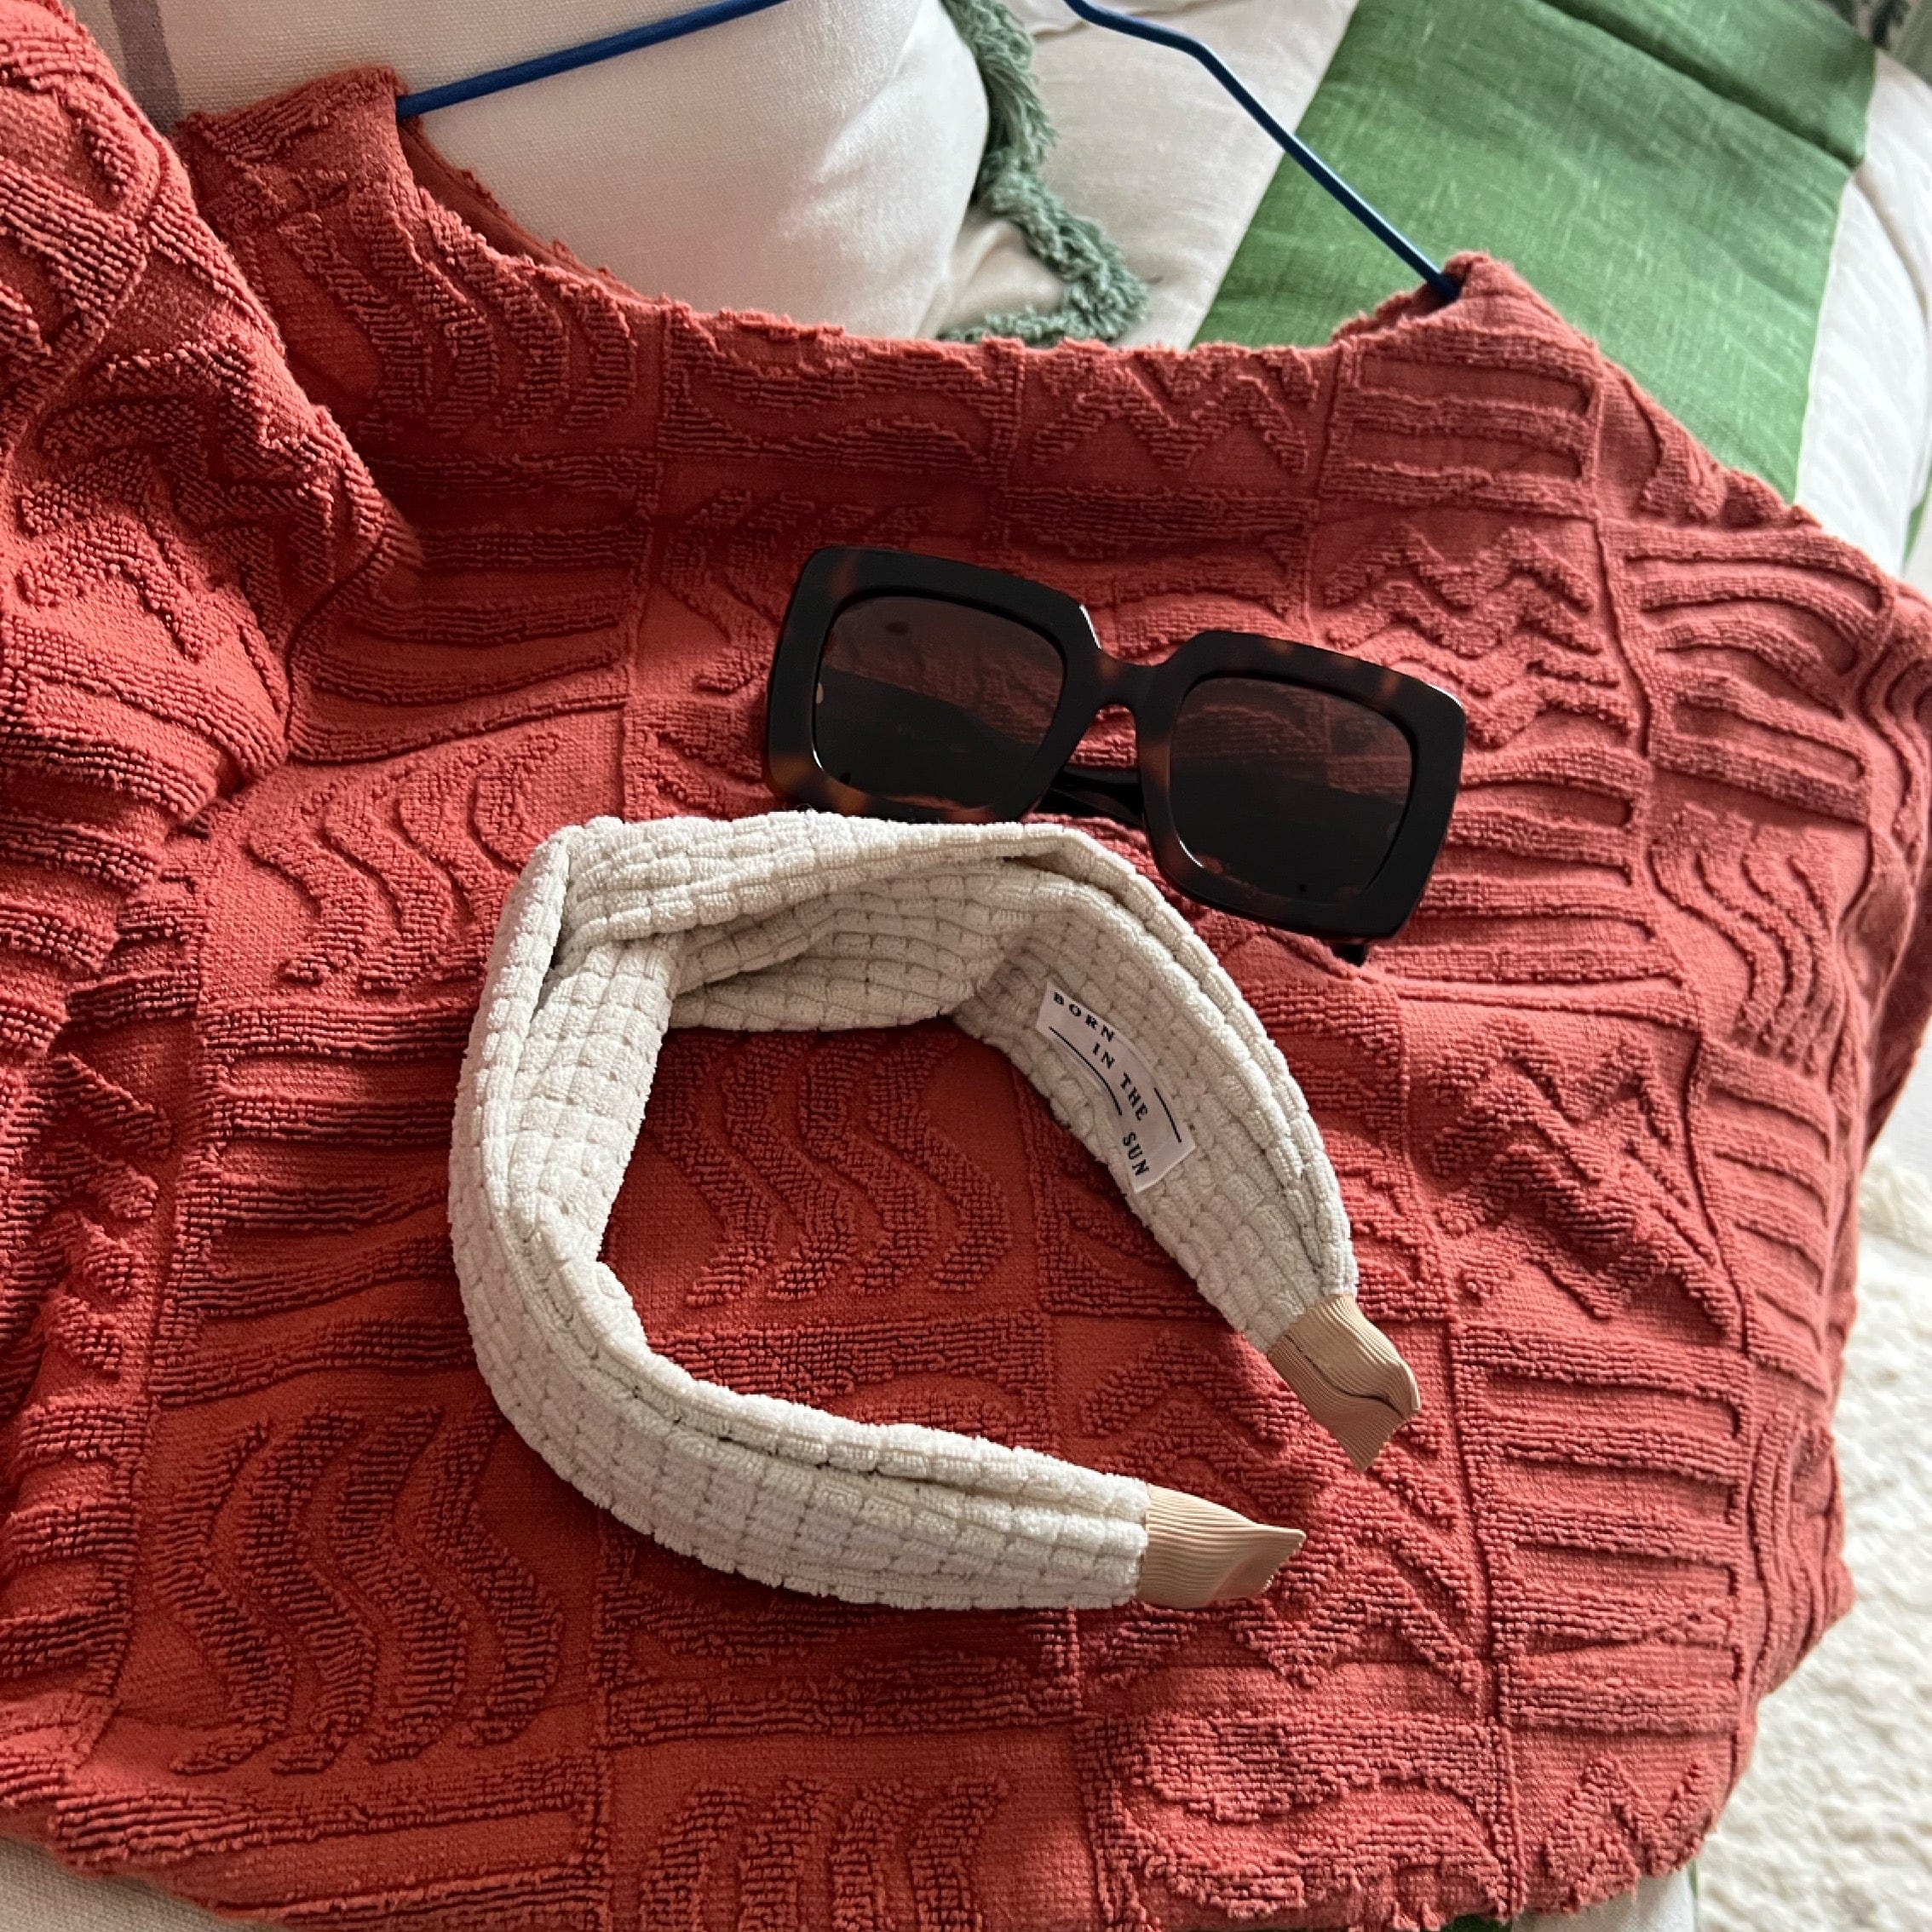 Taormina Style Tortoiseshell Sunglasses - Born In The Sun